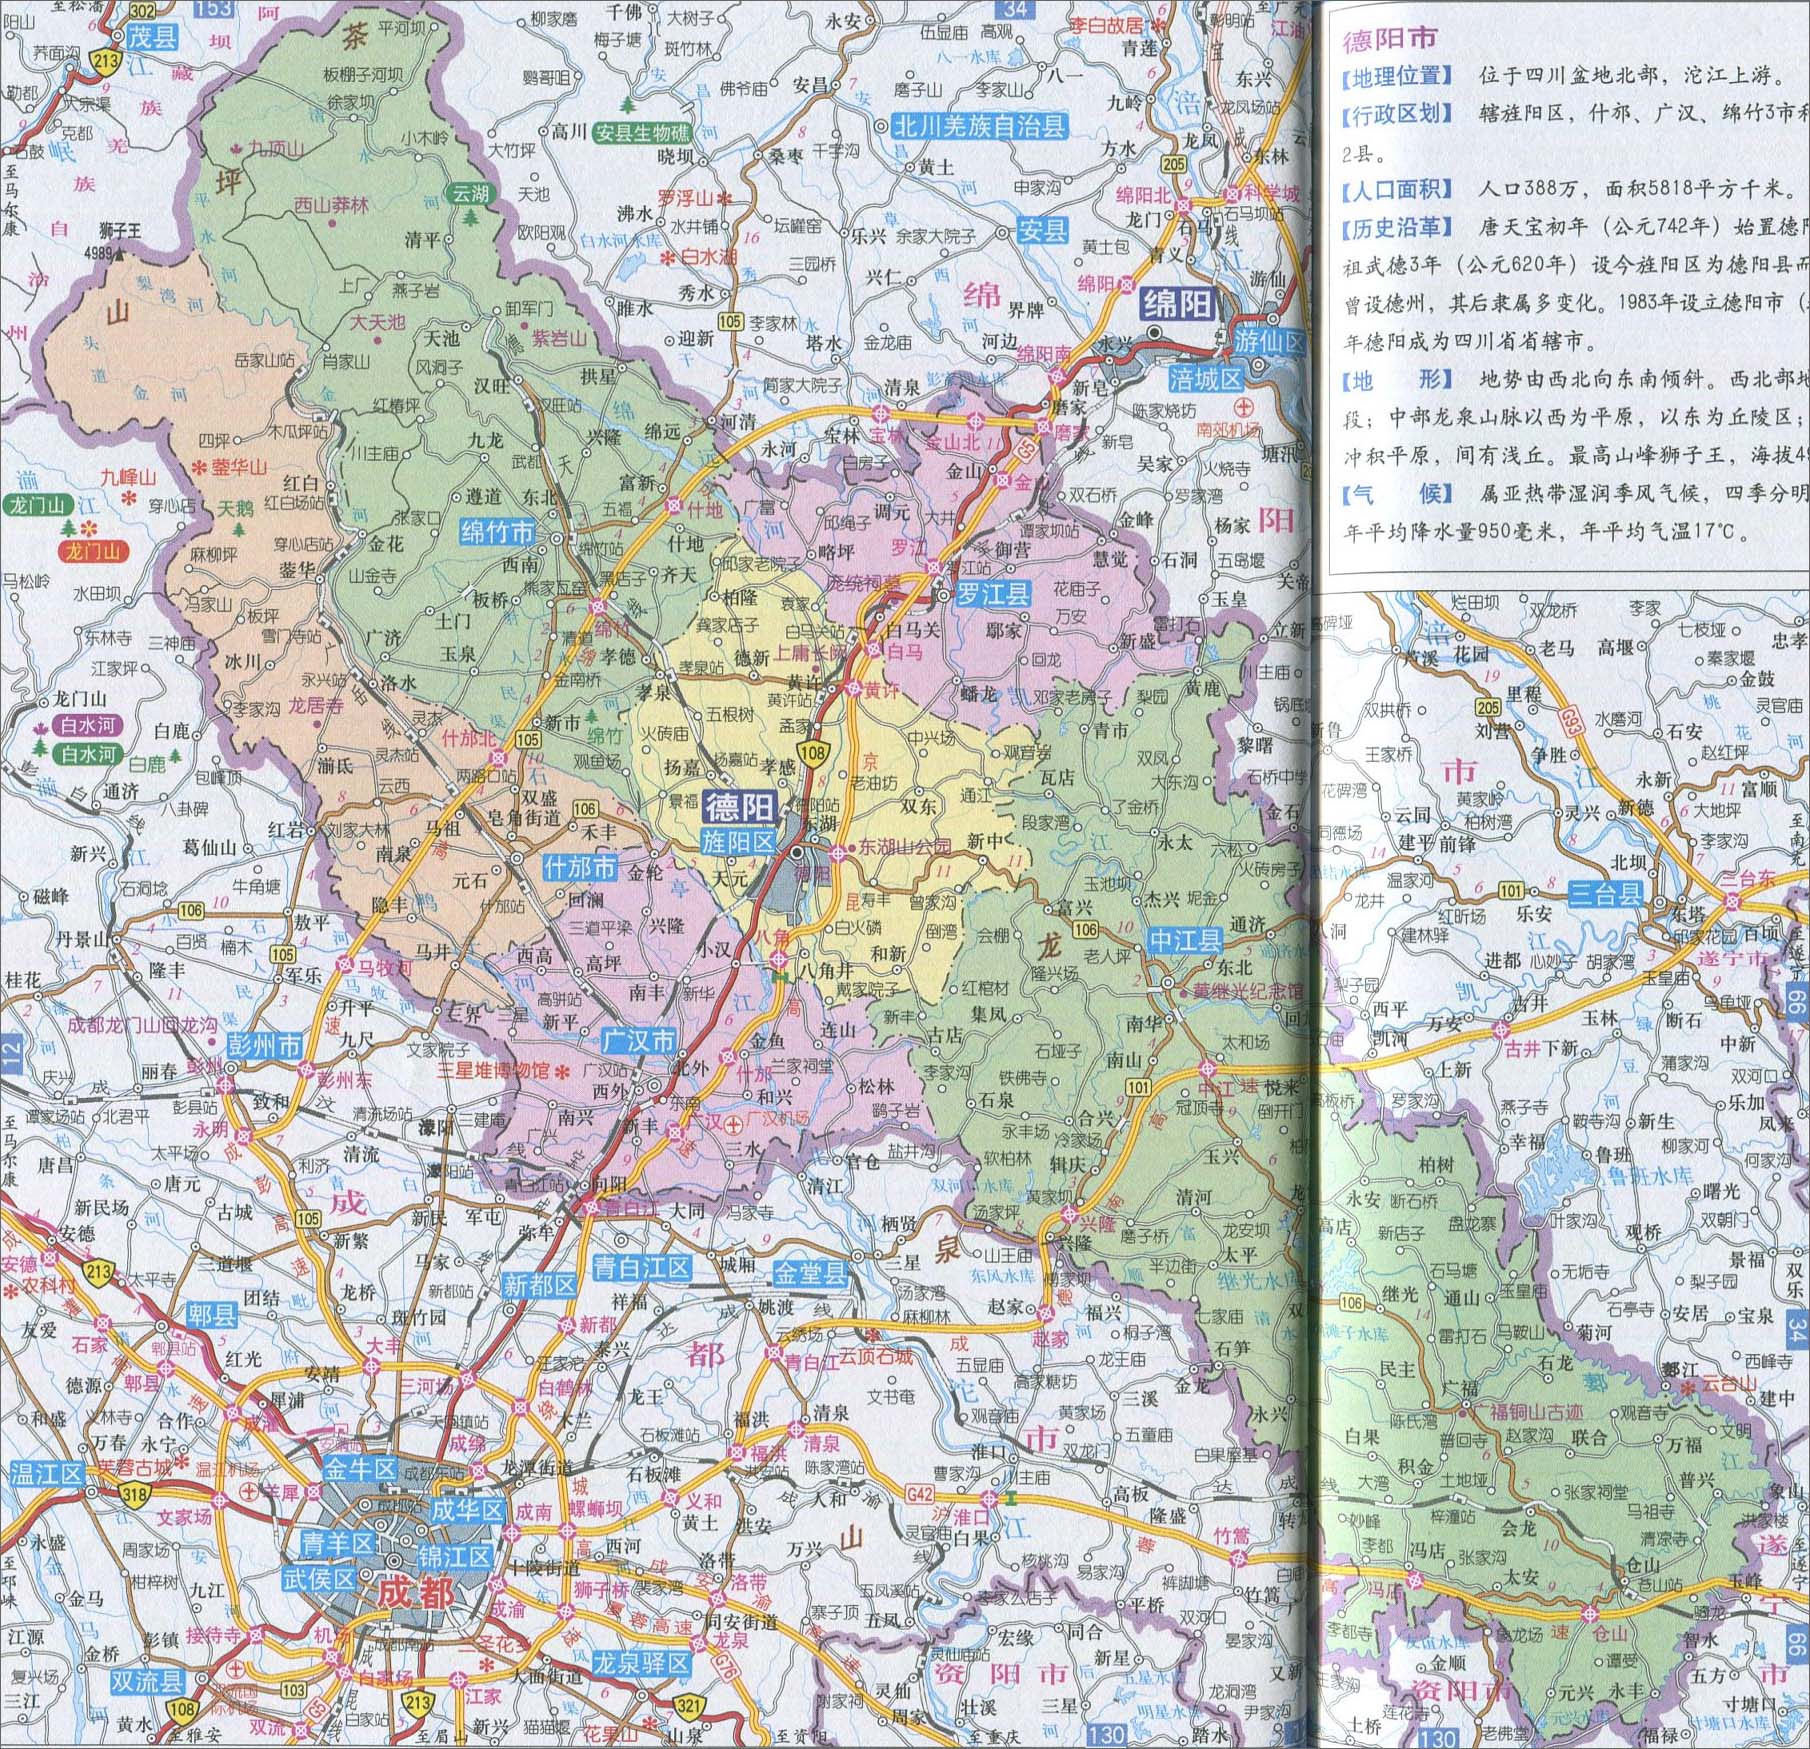 中国地图 四川 德阳市 >> 德阳市地图  相关链接: 成都市  雅安市  广图片